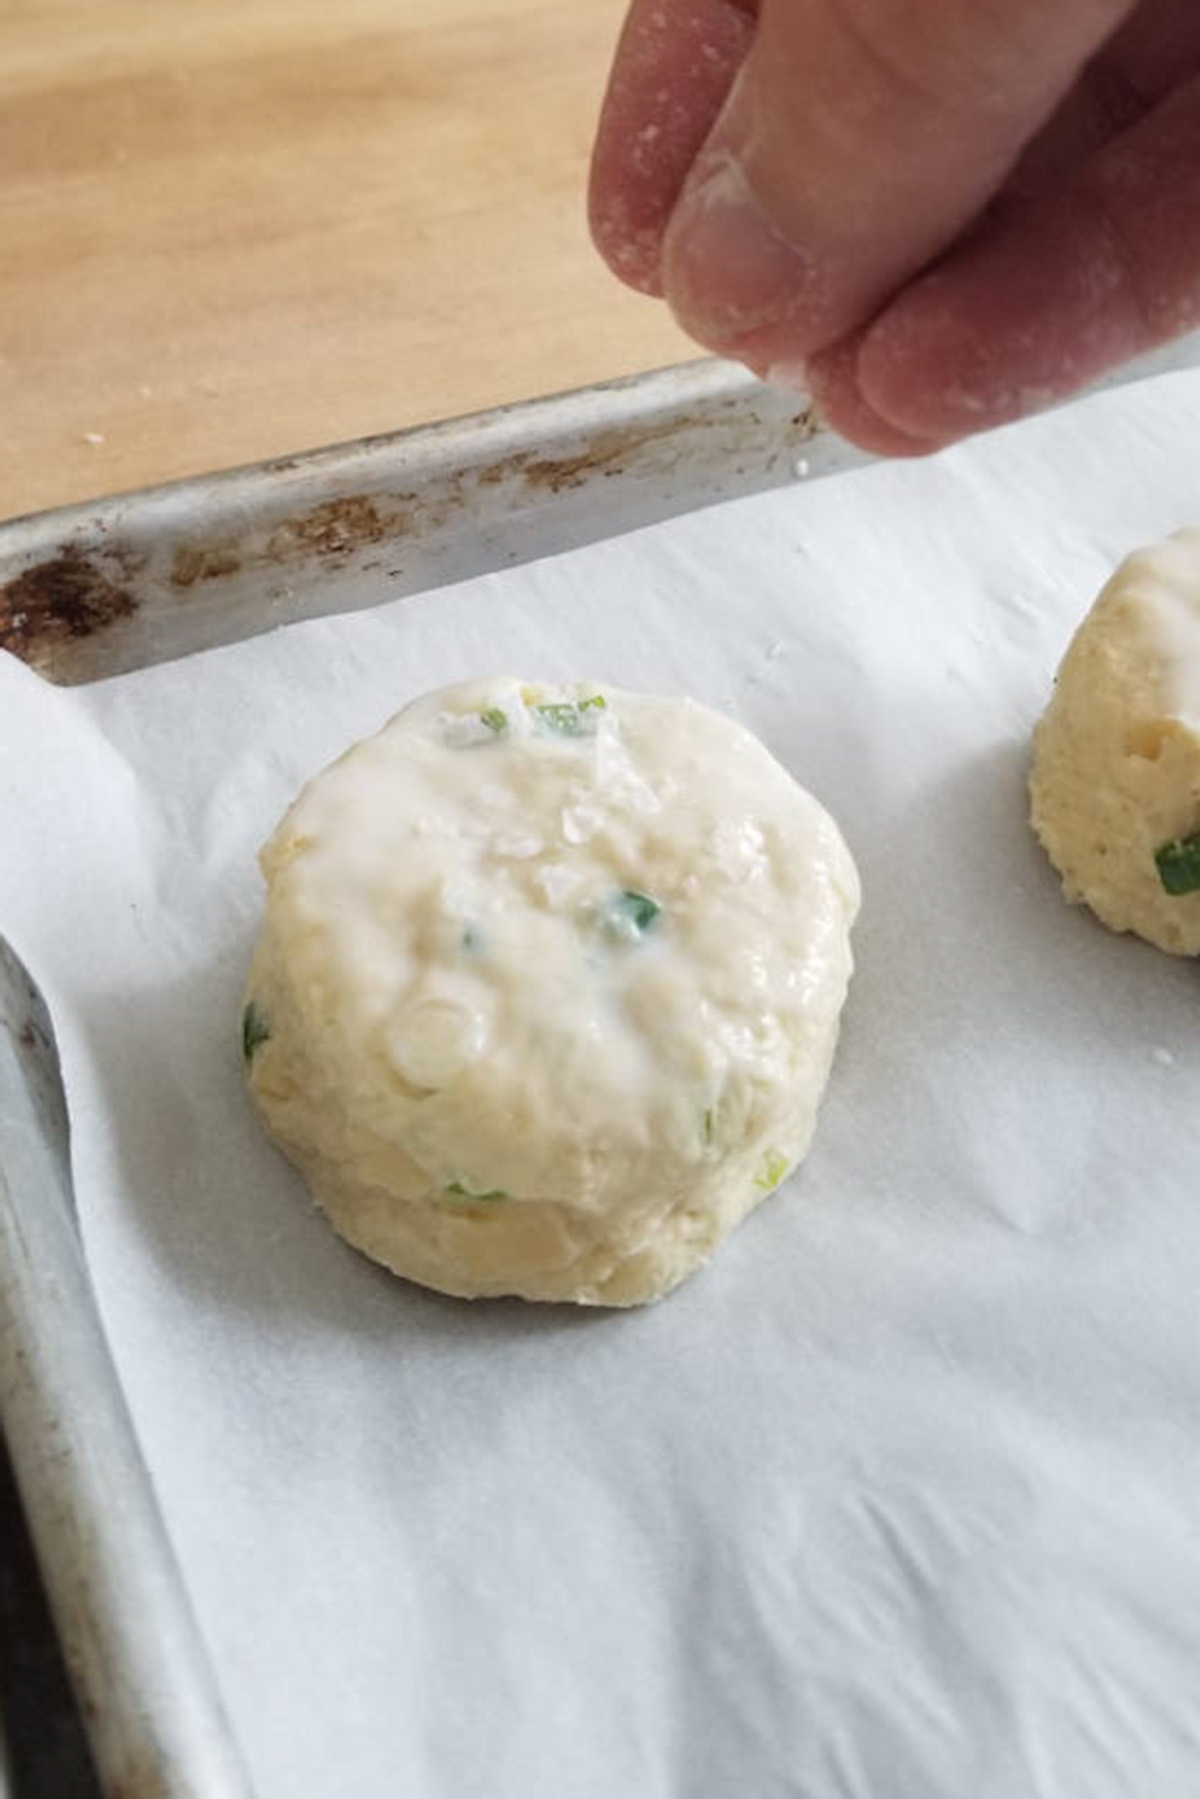 a hand sprinkling salt onto a scone.